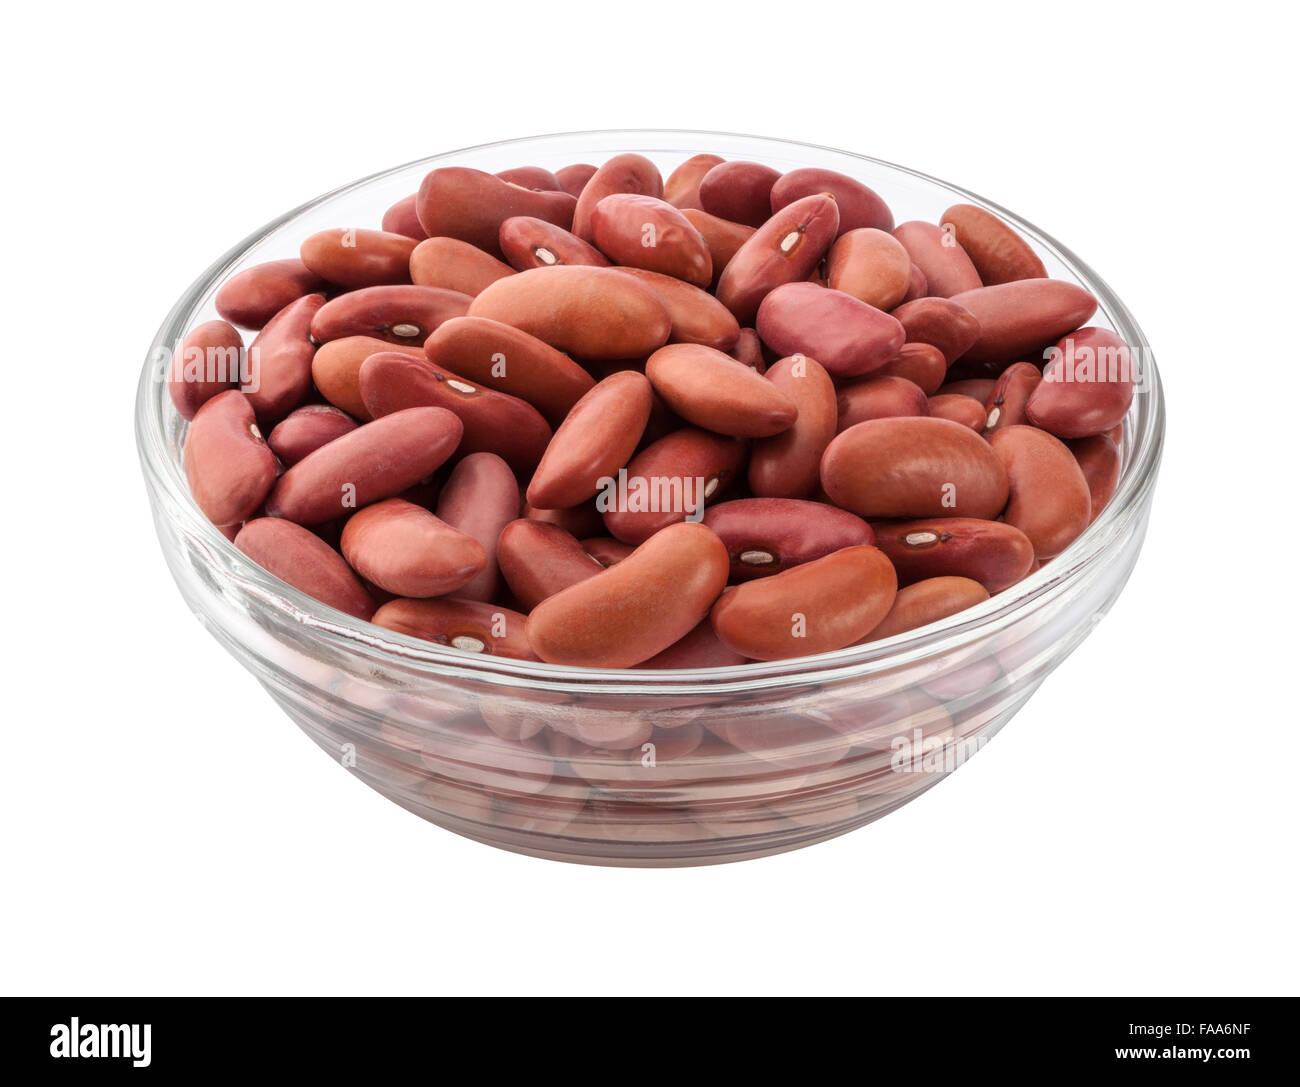 Des haricots rouges dans un bol en verre. Ces légumineuses nutritives peuvent être cuits, et sont riches en protéines et fibres. L'image est une coupe Banque D'Images